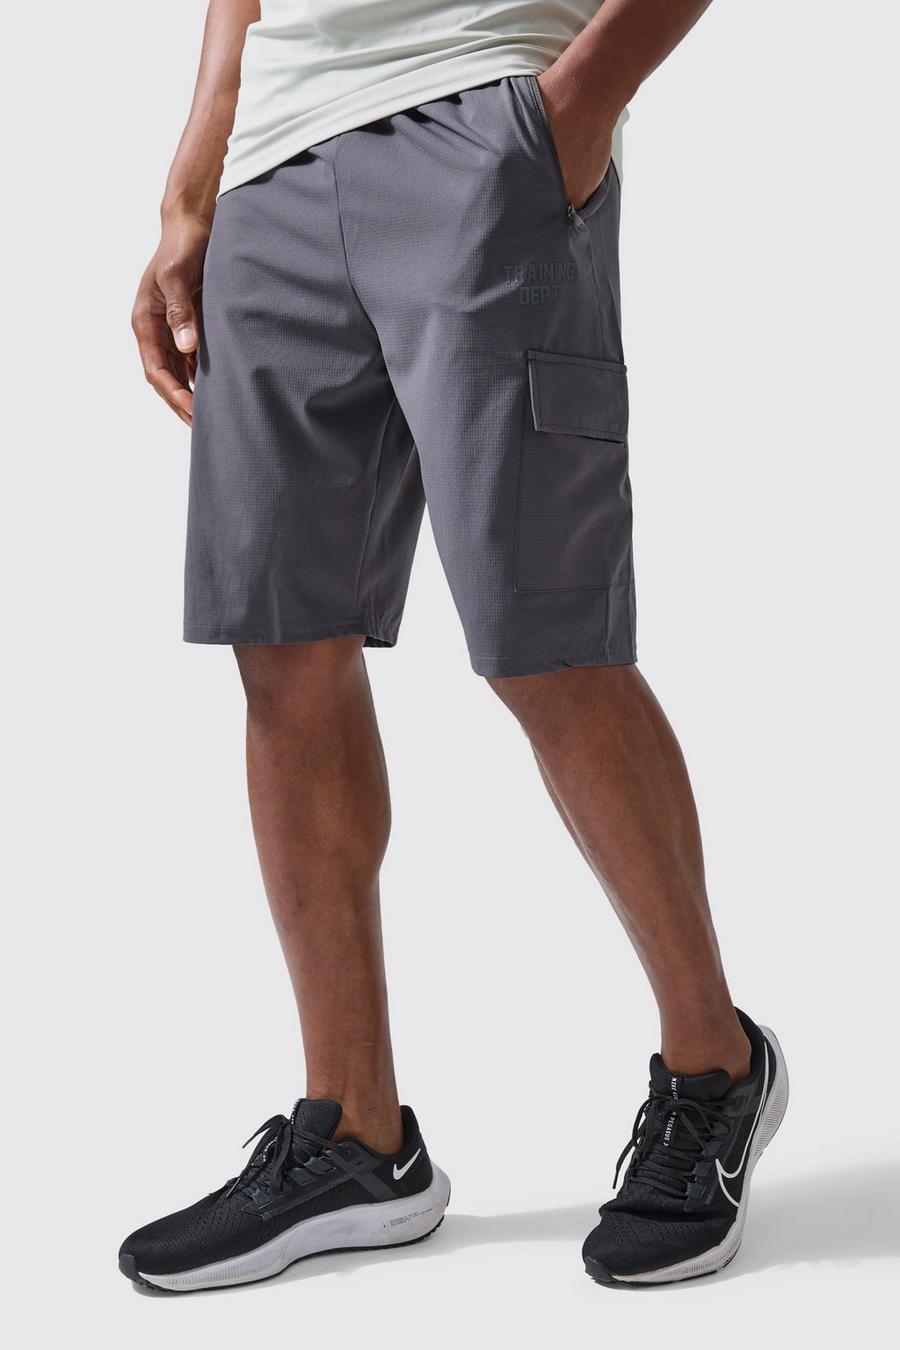 Pantalón corto Tall Active cargo, Charcoal